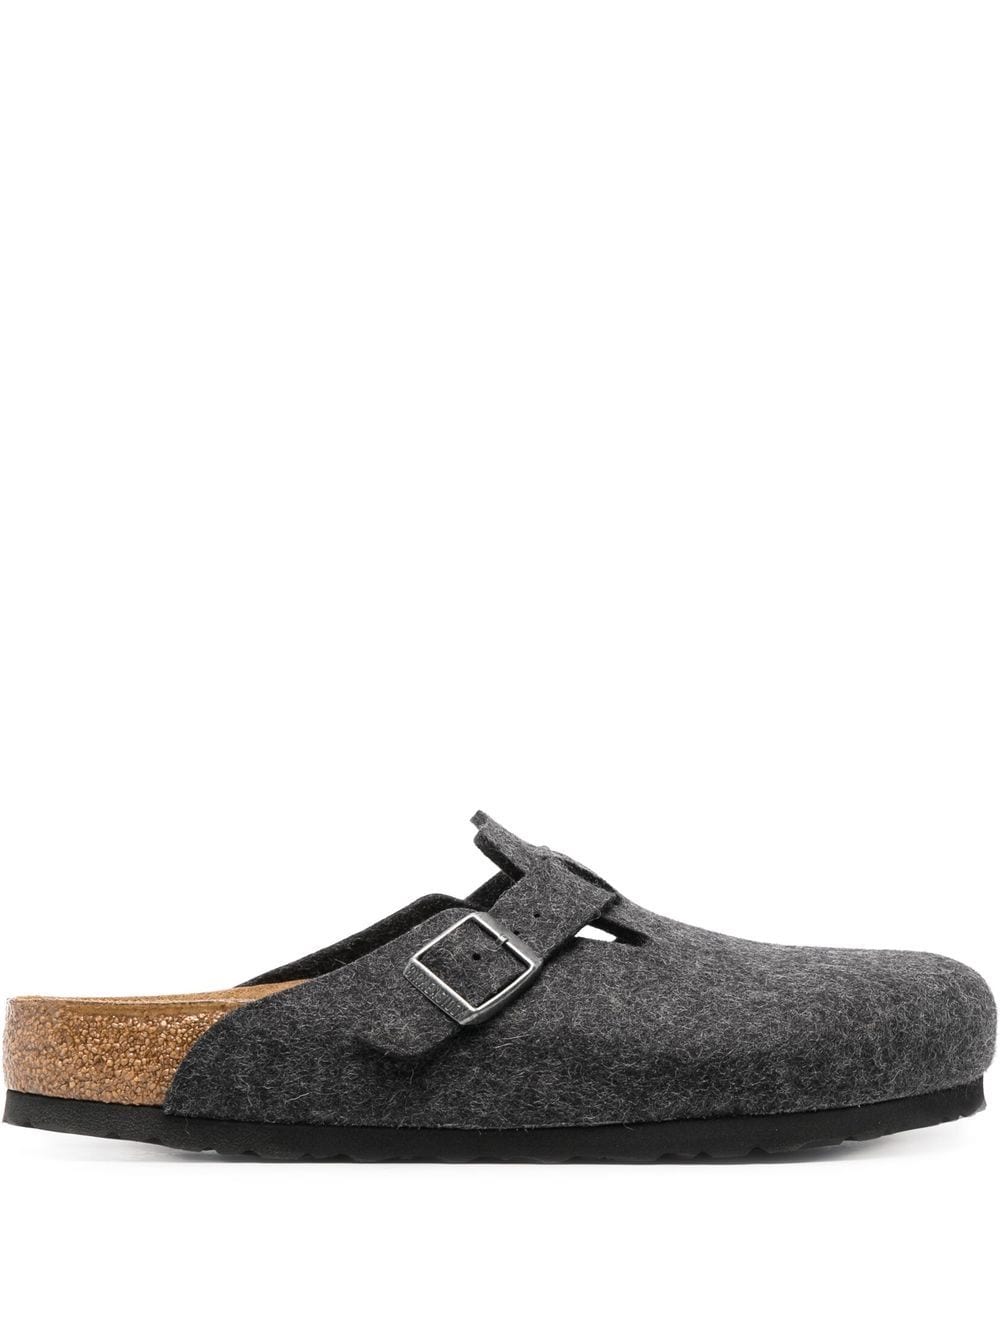 Birkenstock Boston round-toe slippers - Grey von Birkenstock